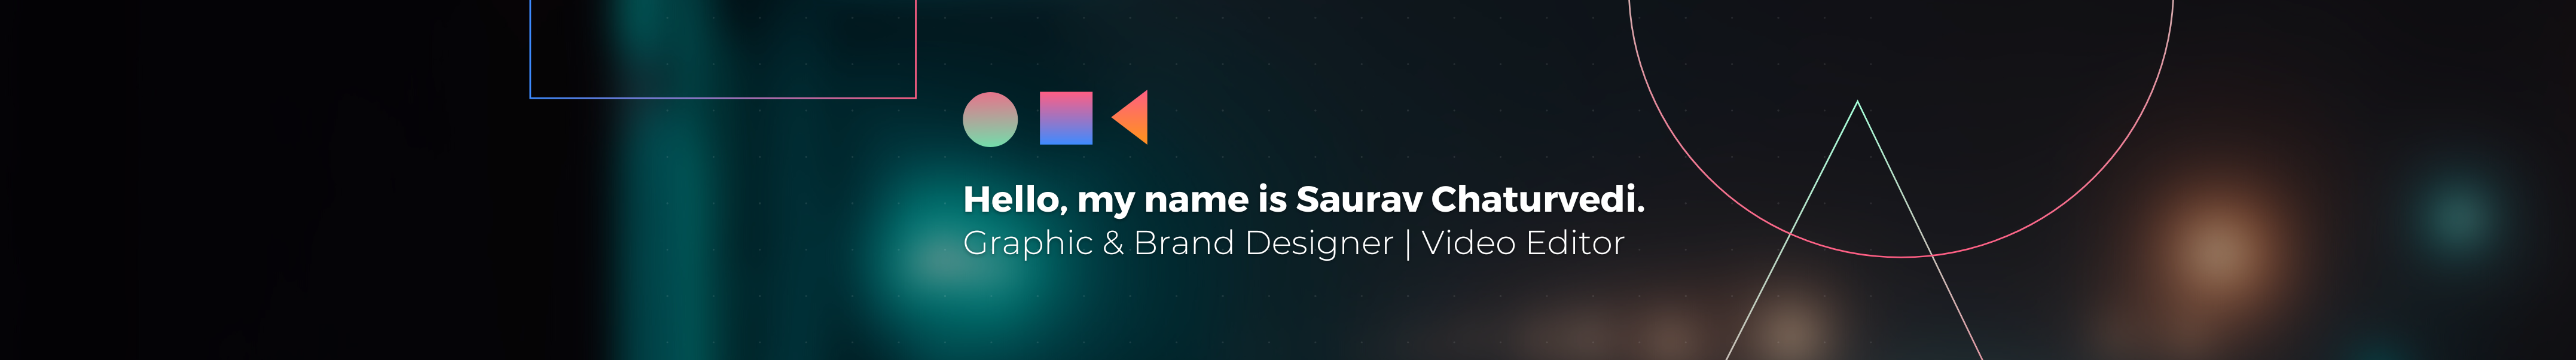 Profil-Banner von Saurav Chaturvedi